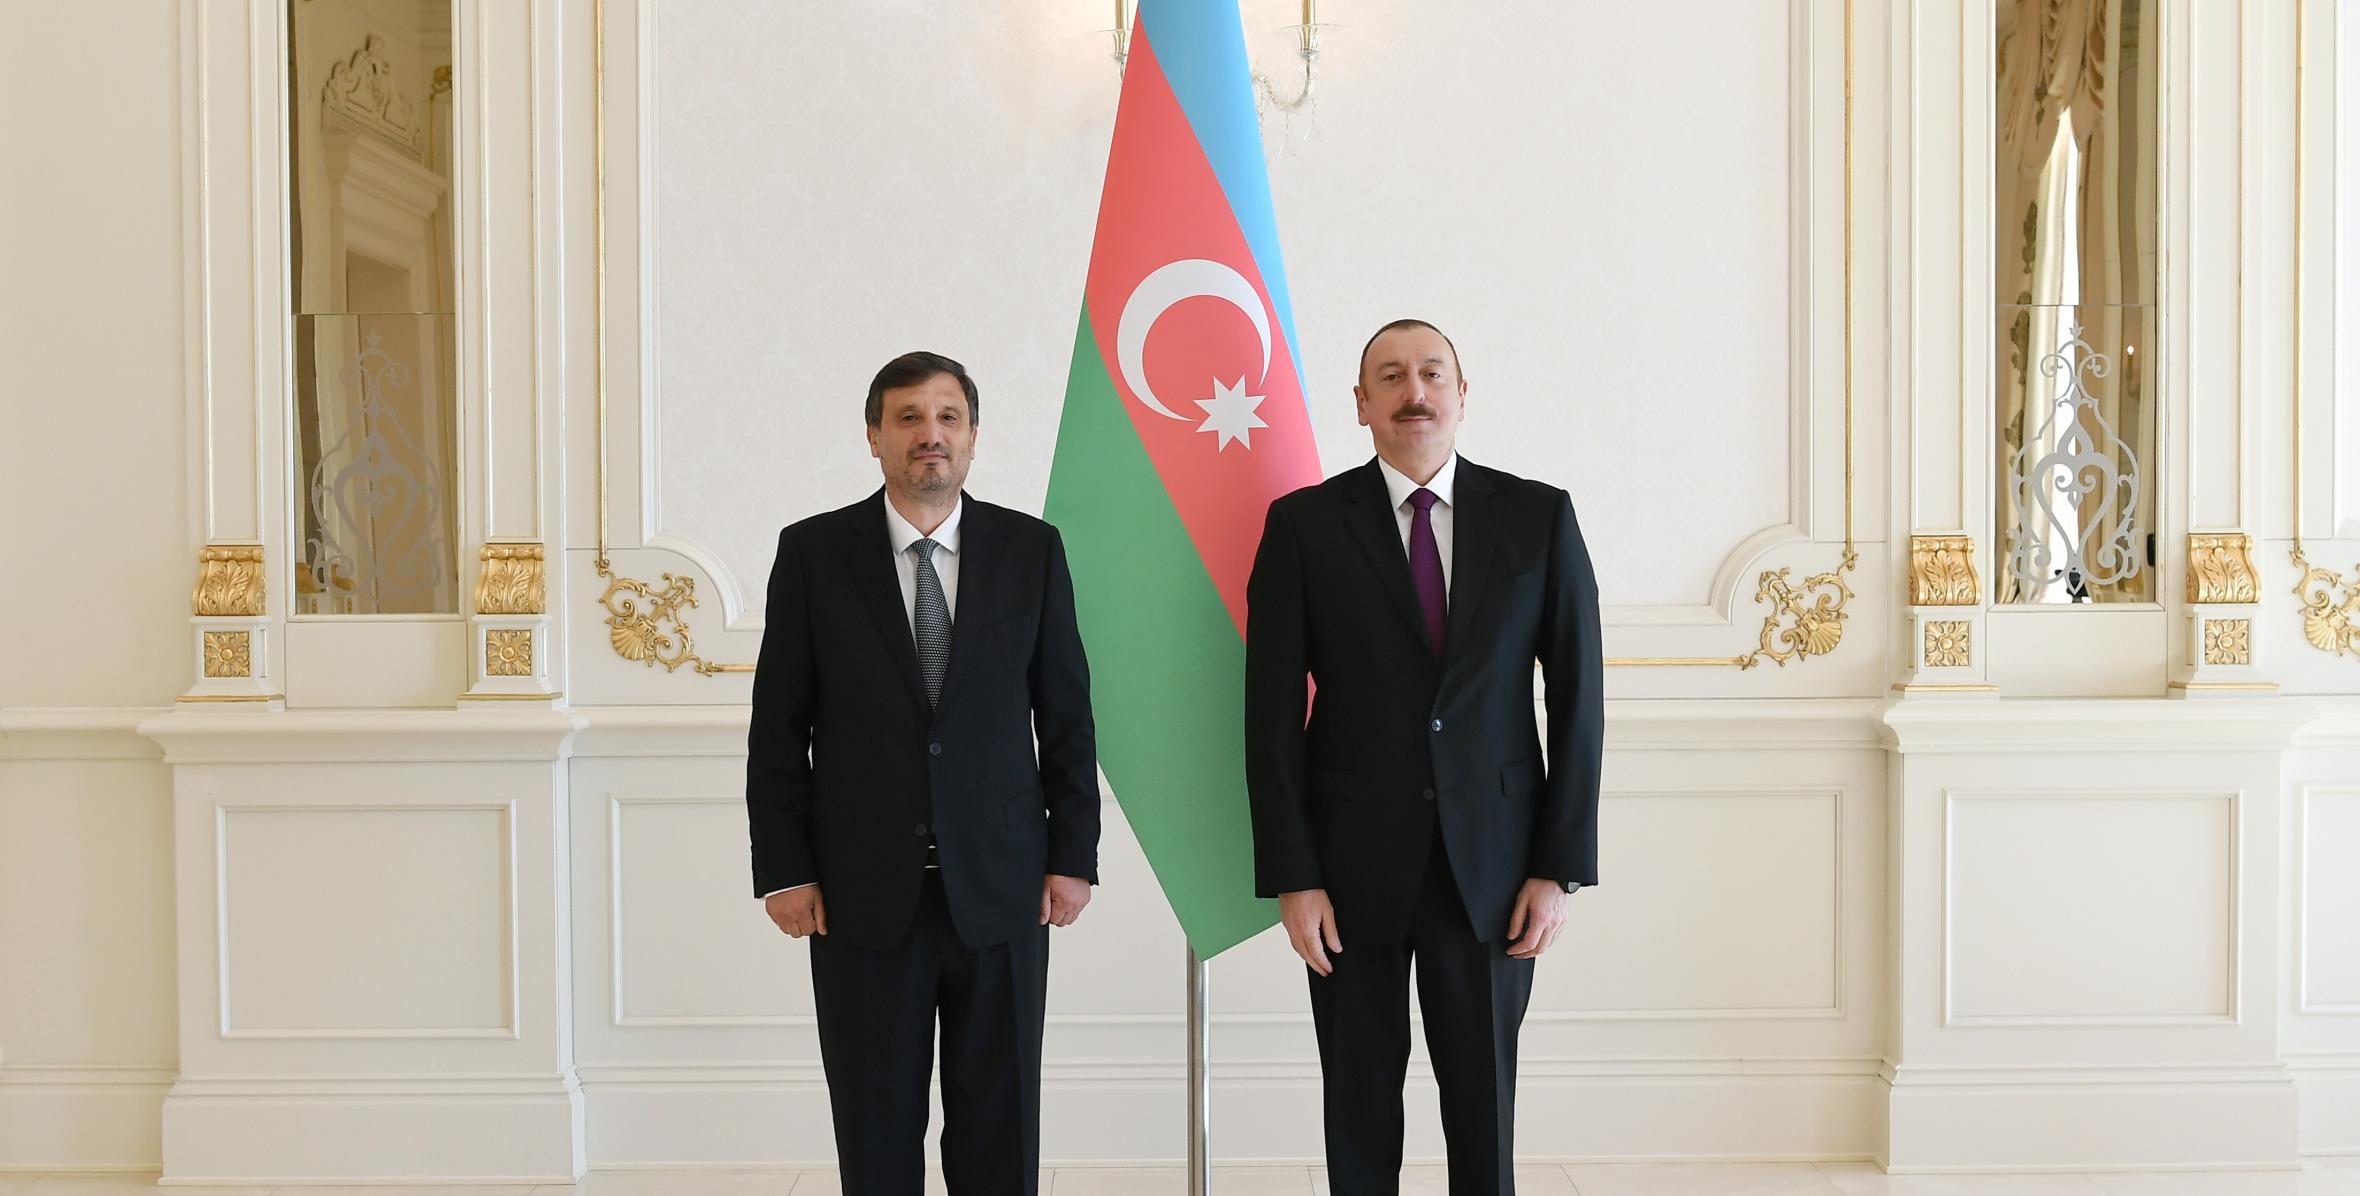 Ильхам Алиев принял верительные грамоты новоназначенного посла Болгарии в Азербайджане